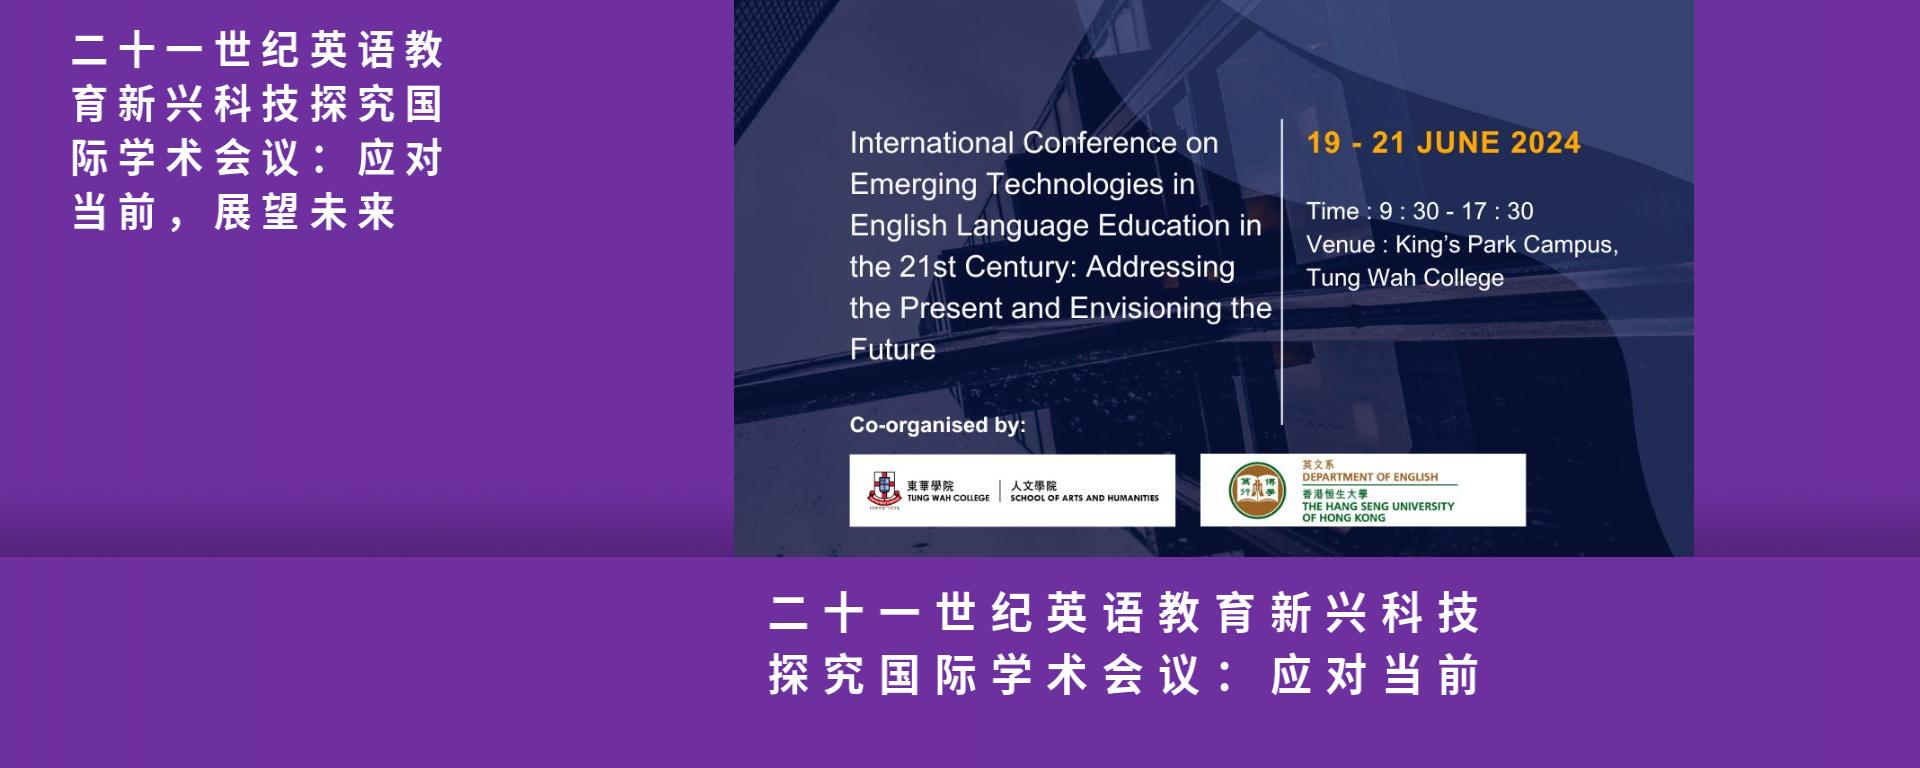 二十一世纪英语教育新兴科技探究国际学术会议：应对当前，展望未来